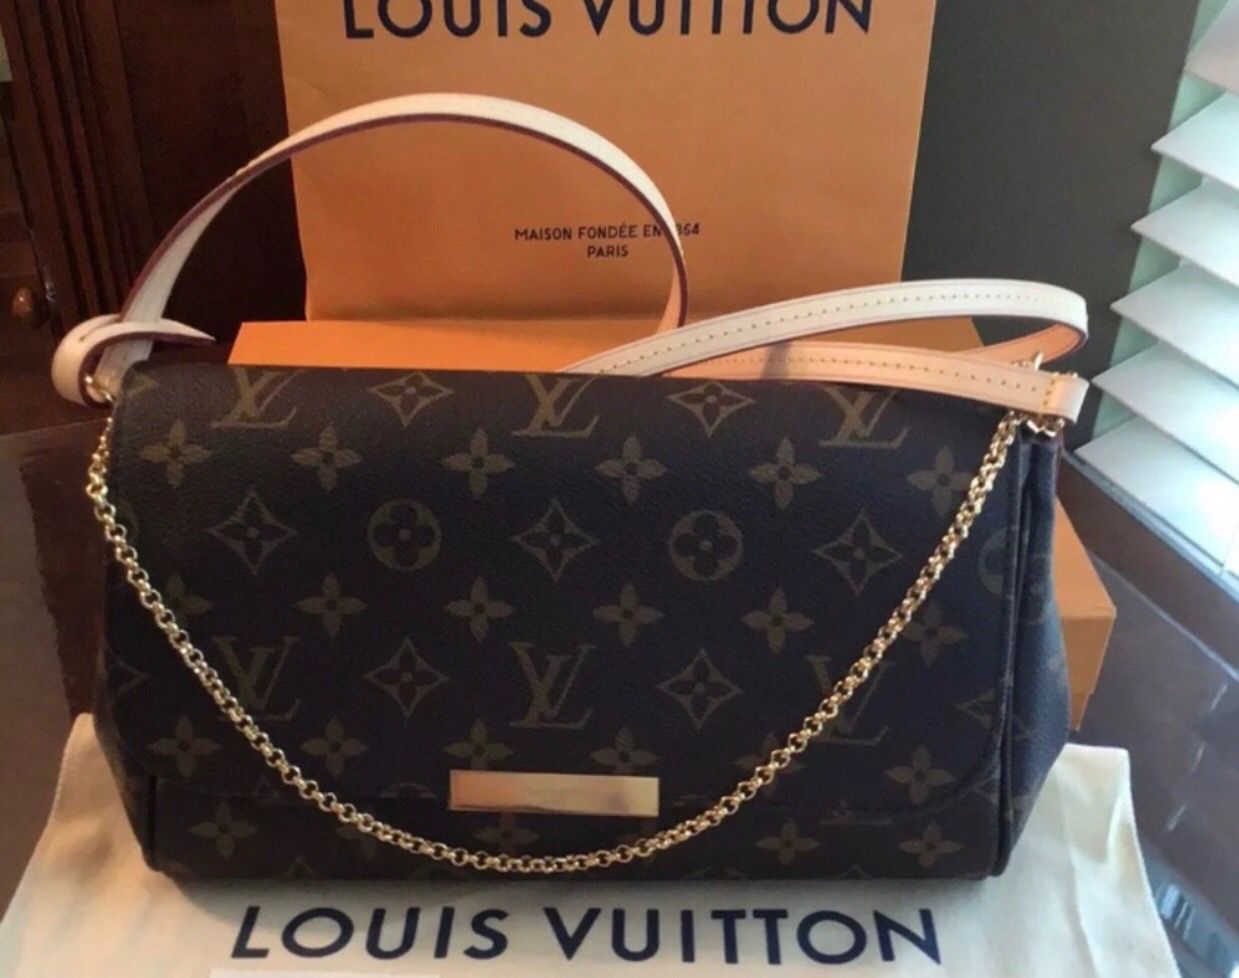 AUTHENTIC Louis Vuitton mm favorite bag